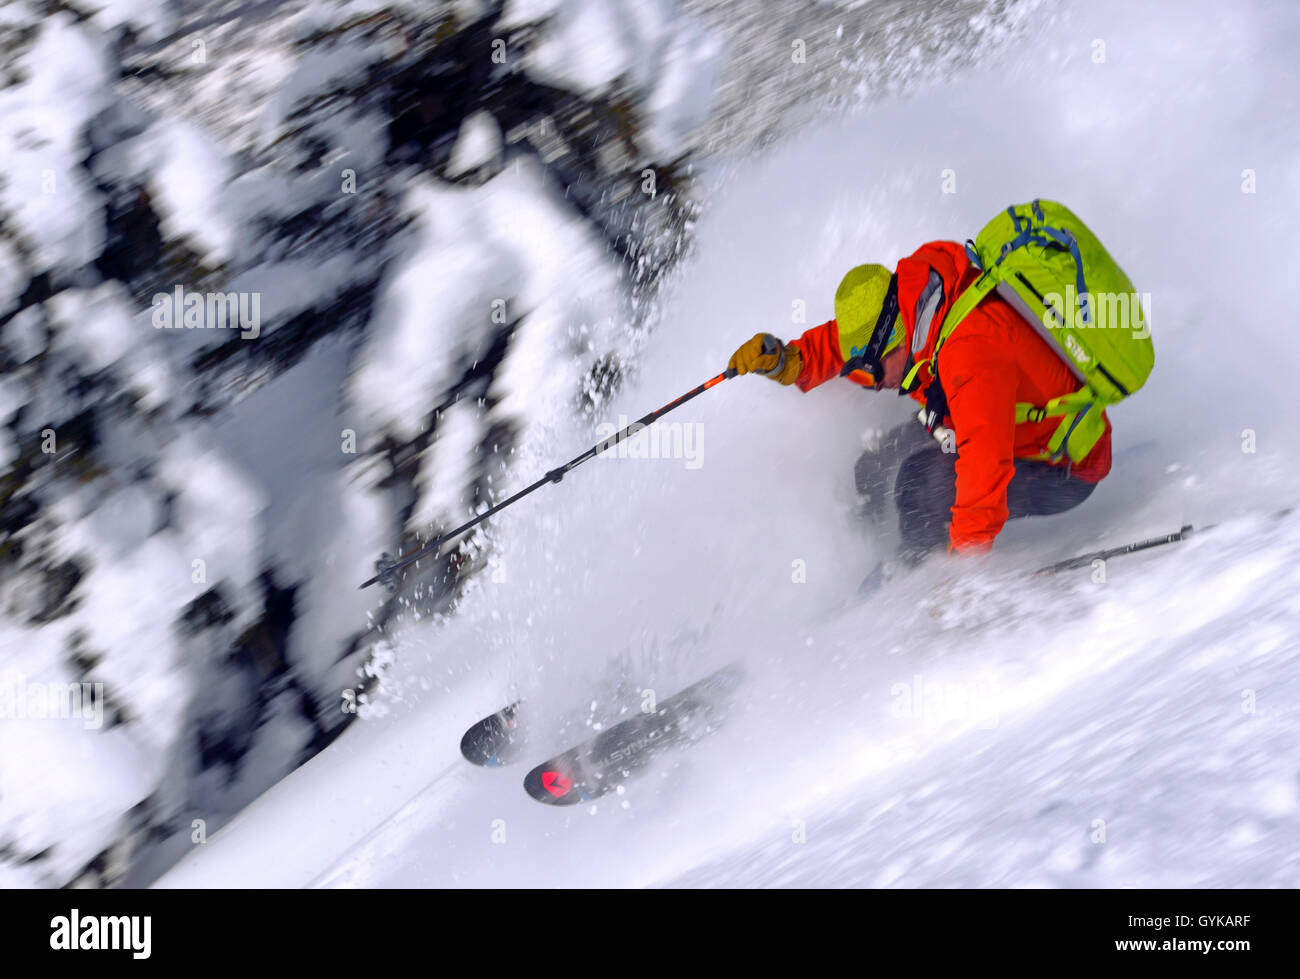 Le ski en neige poudreuse, France, Savoie, Sainte-Foy Tarentaise Banque D'Images